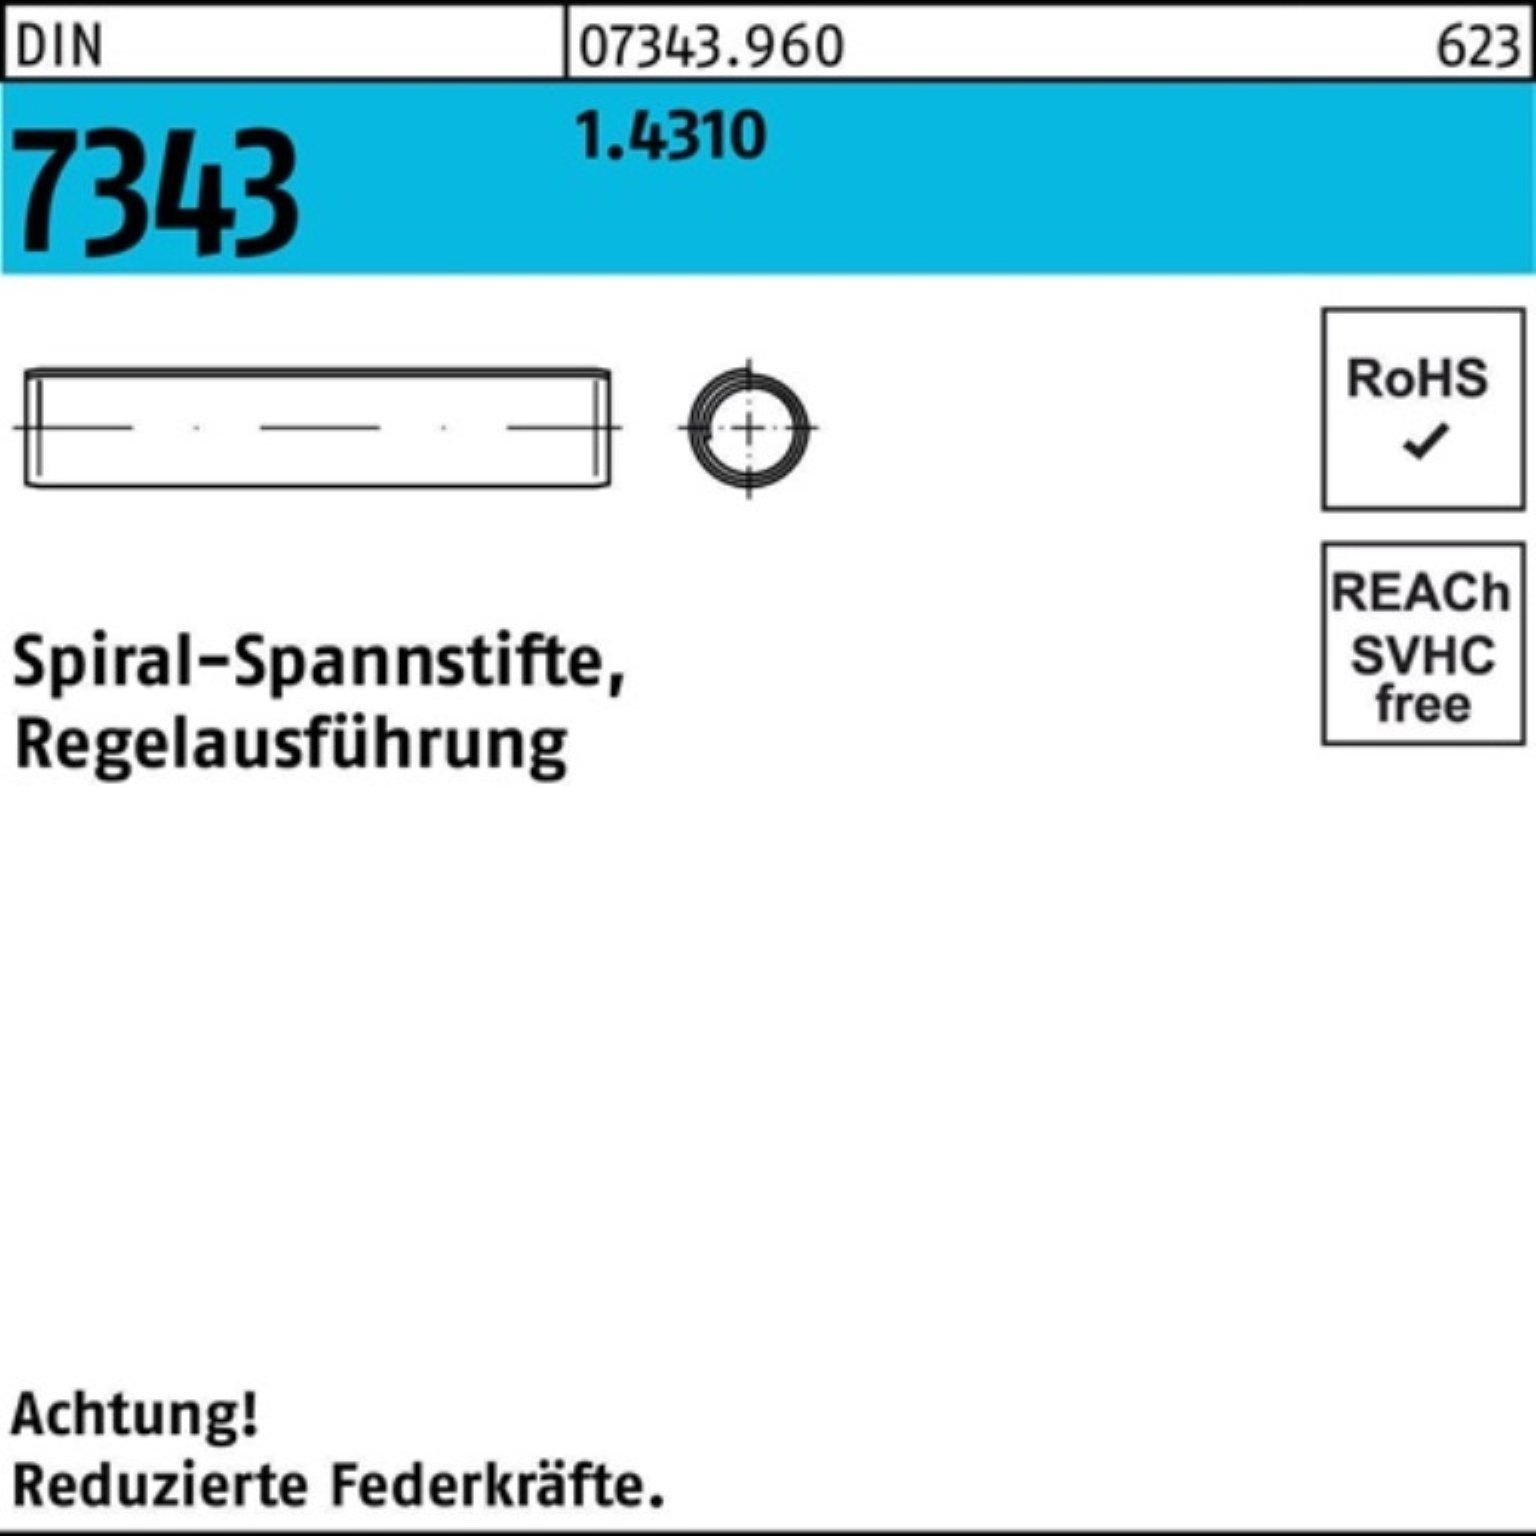 Spannstift 1.4310 Reyher Spiralspannstift DIN 6x 16 8750 500er Pack Regelausf. 7343/ISO